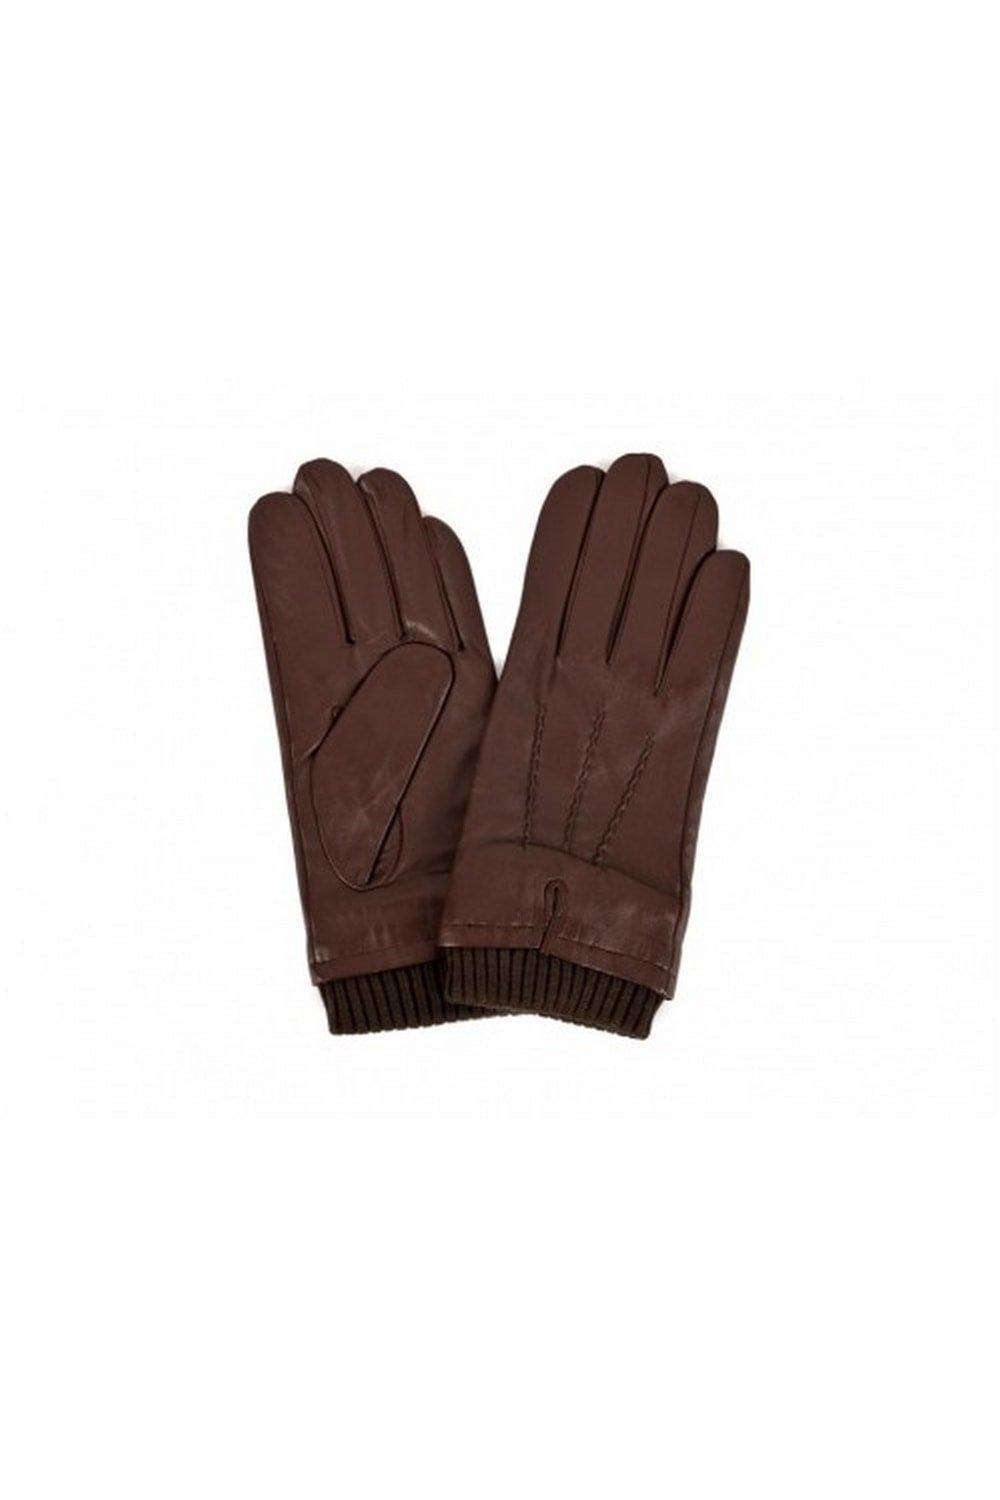 Перчатки с ребристыми манжетами Eastern Counties Leather, коричневый 1 пара кожаные рабочие перчатки класса премиум